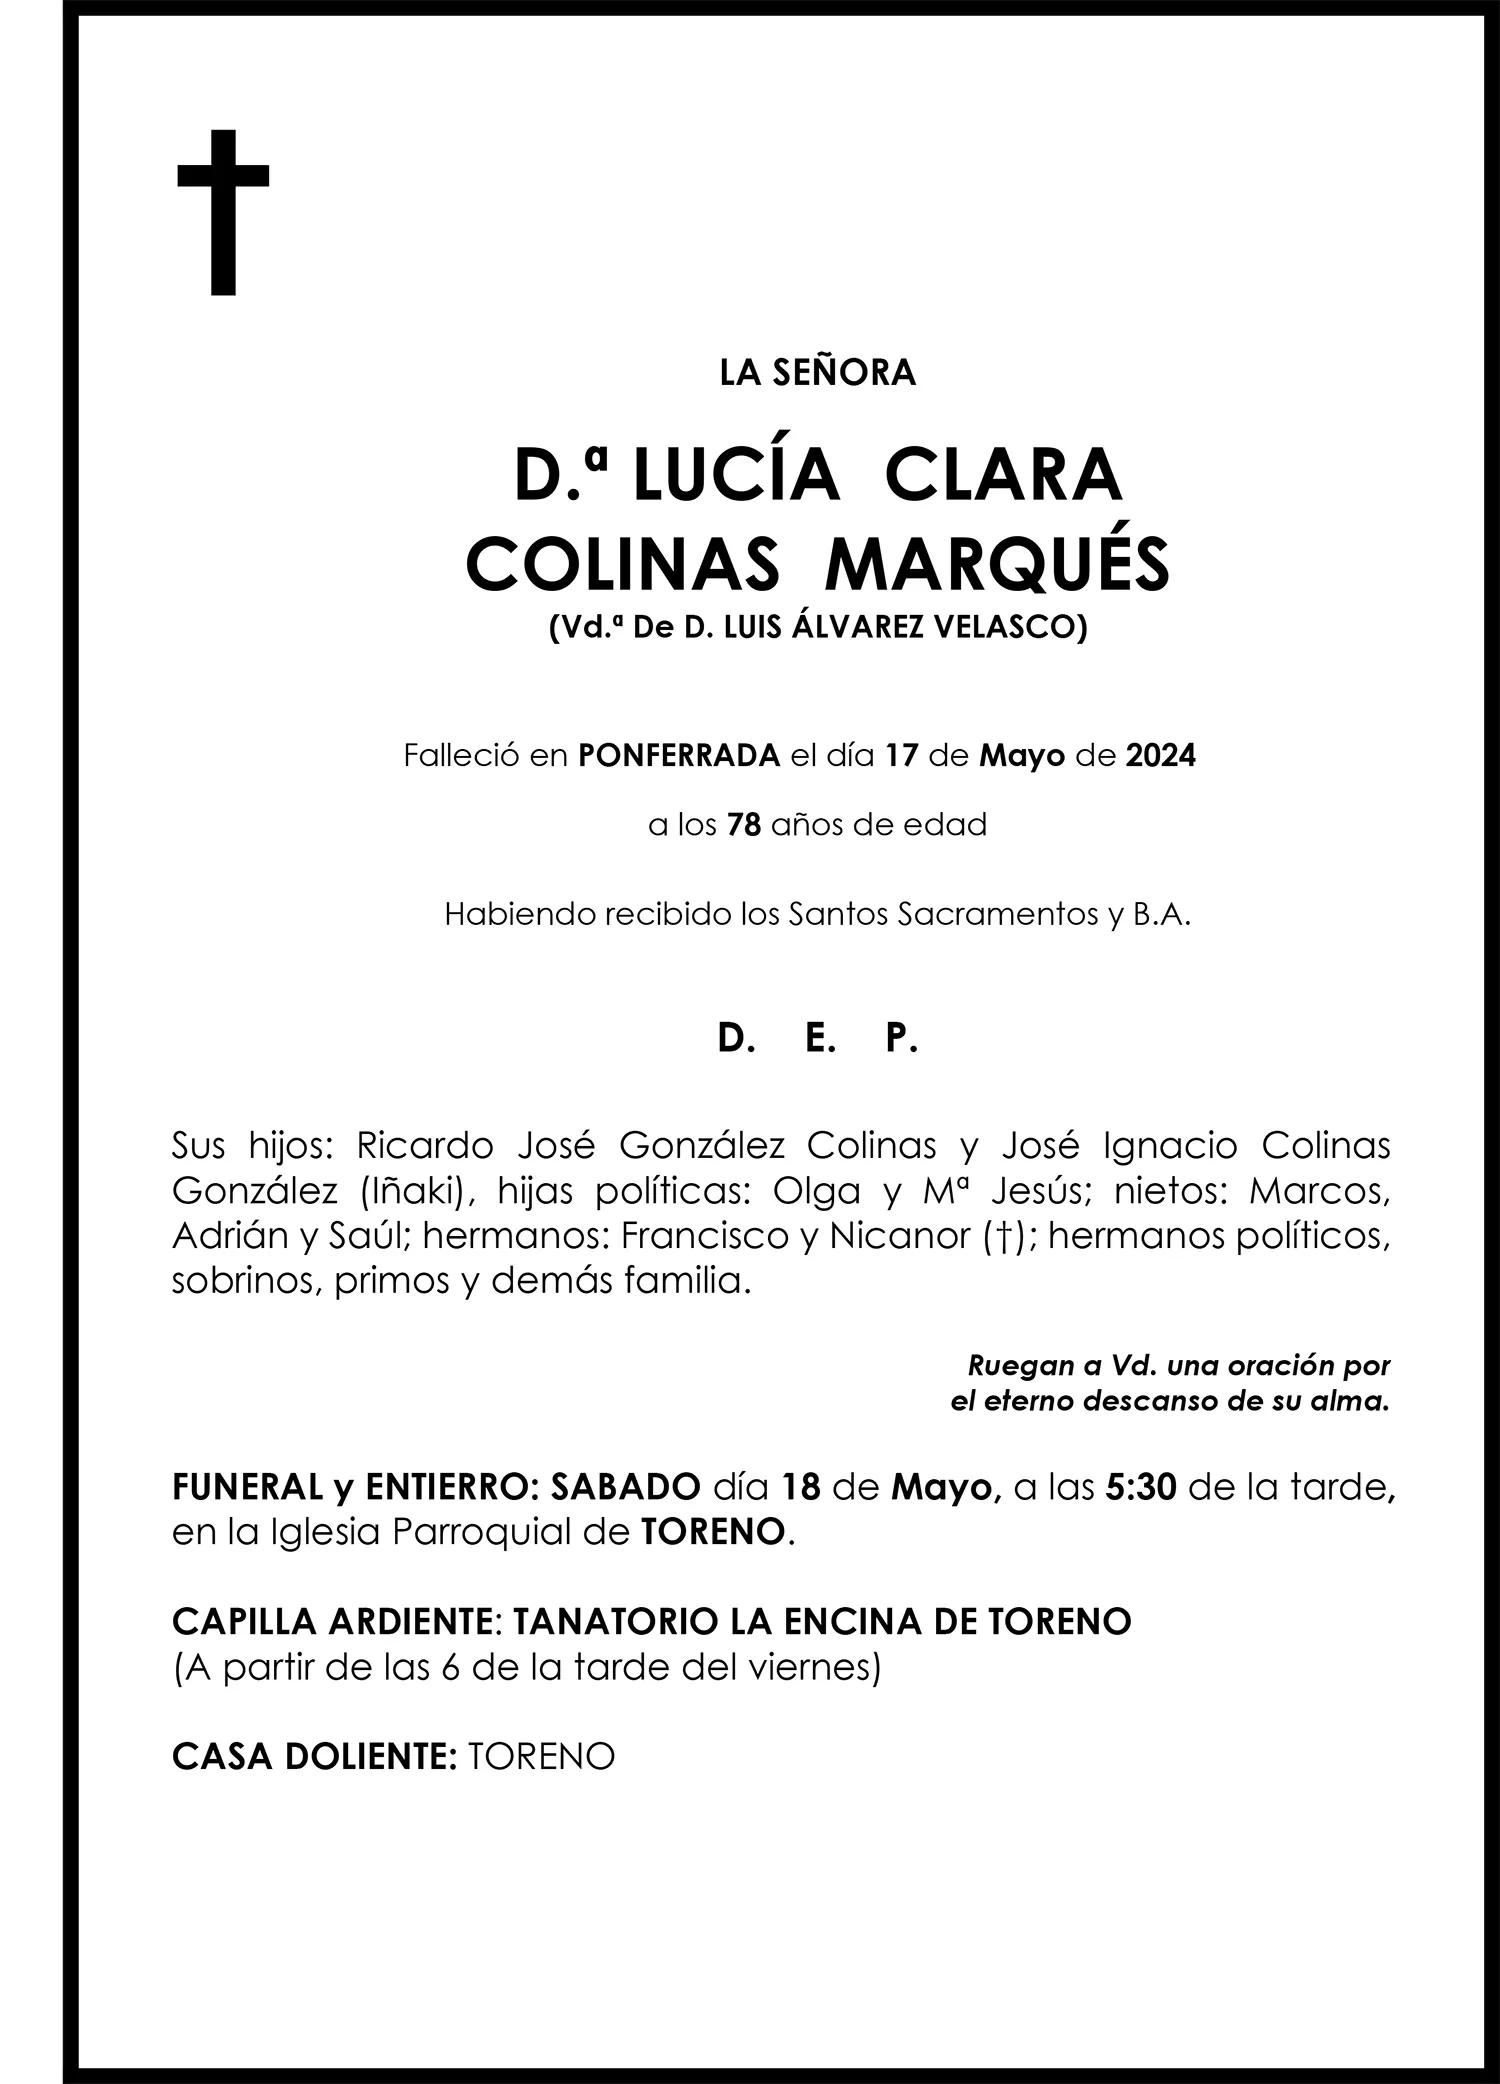 LUCÍA CLARA COLINAS MARQUÉS